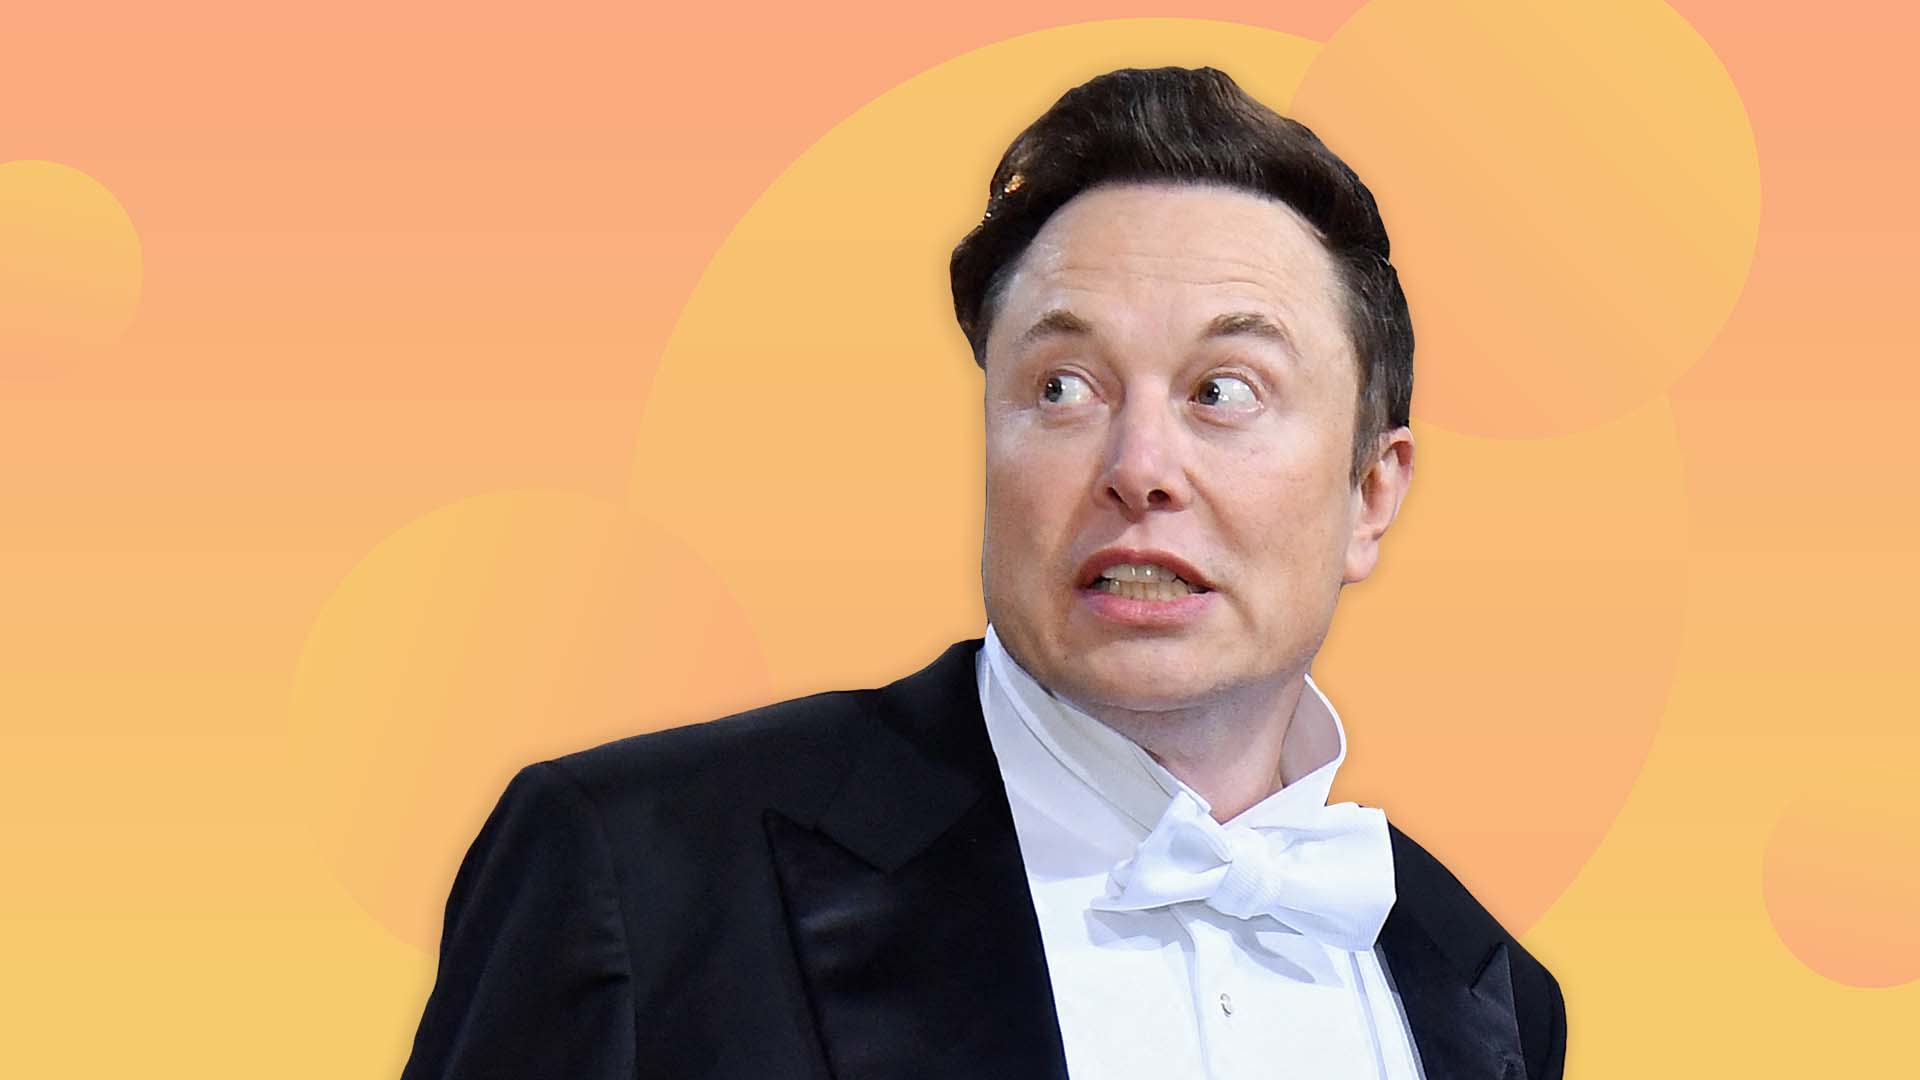 Elon Musk's Recent Announcement Sparks Debate